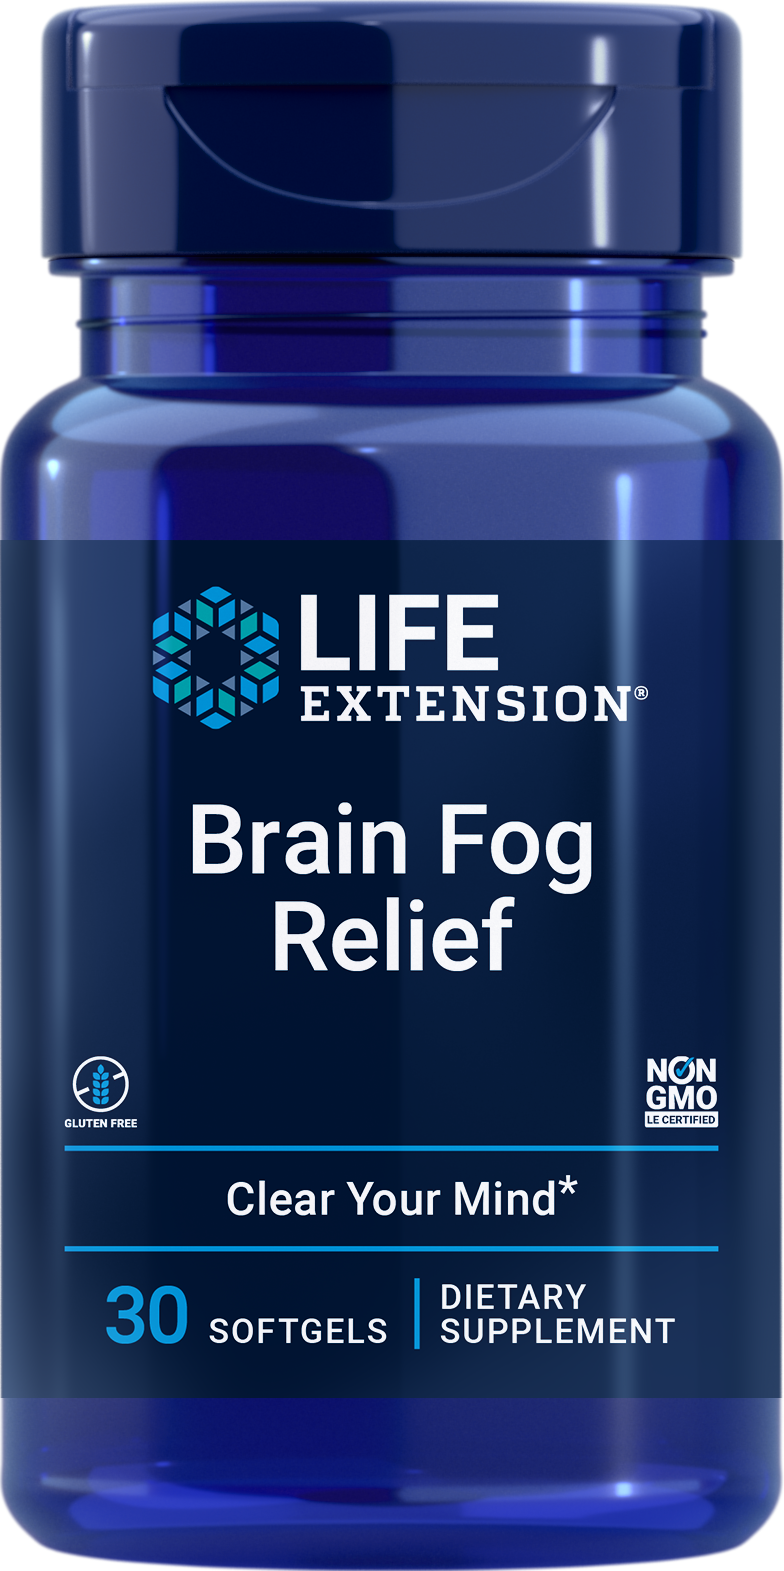 Life Extension Brain Fog Relief, 30 cápsulas blandas para aumentar el rendimiento cognitivo y restaurar la claridad mental y la atención.